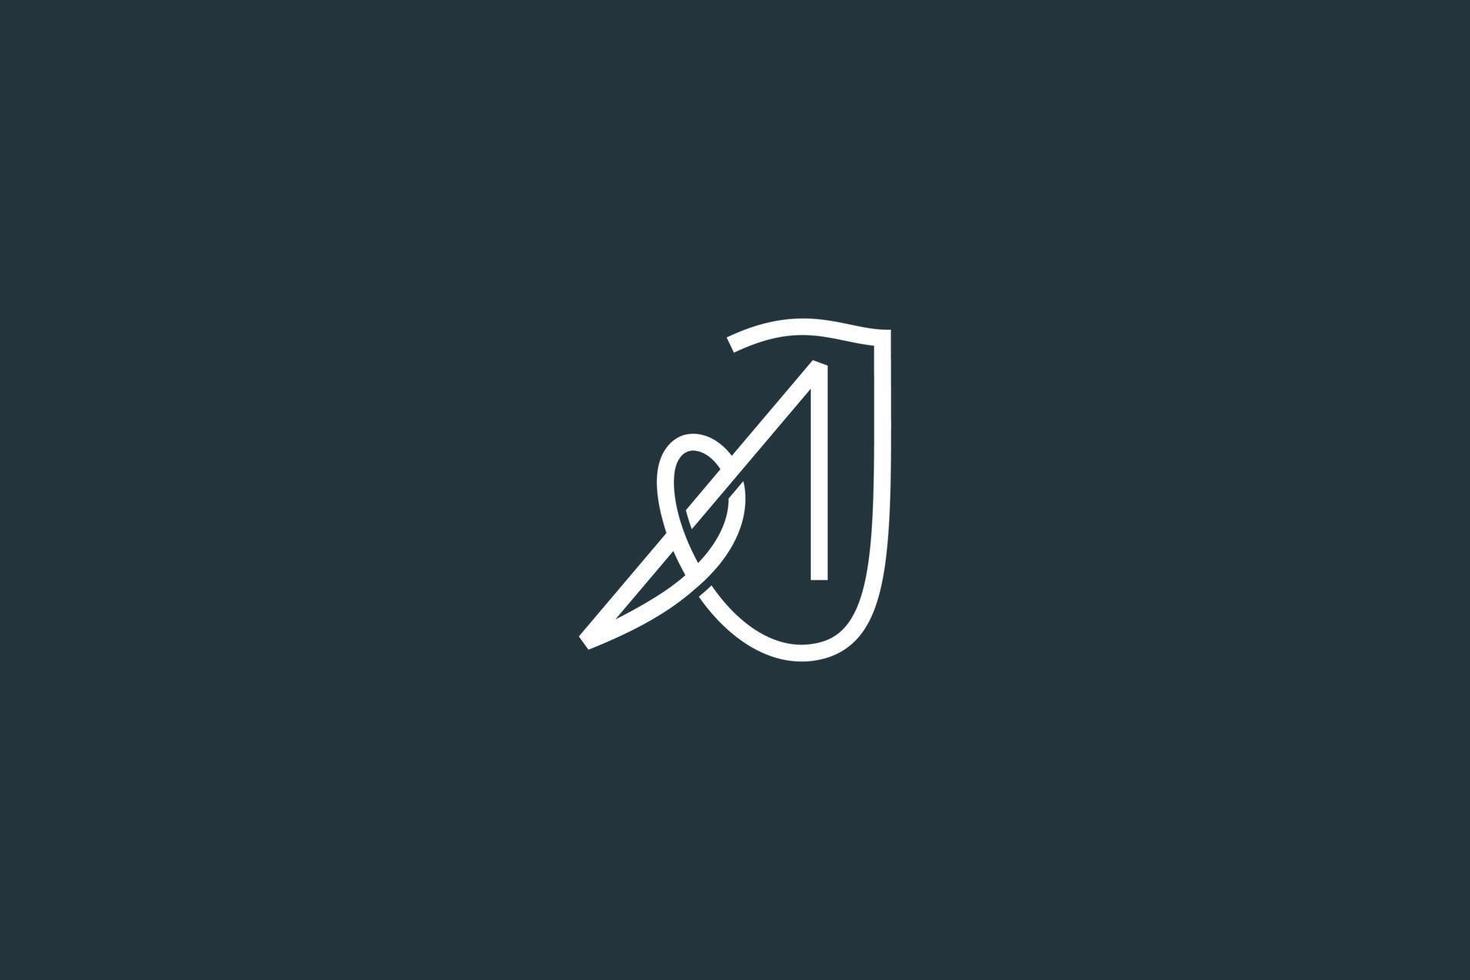 diseño elegante del logotipo de la letra aj o ja vector